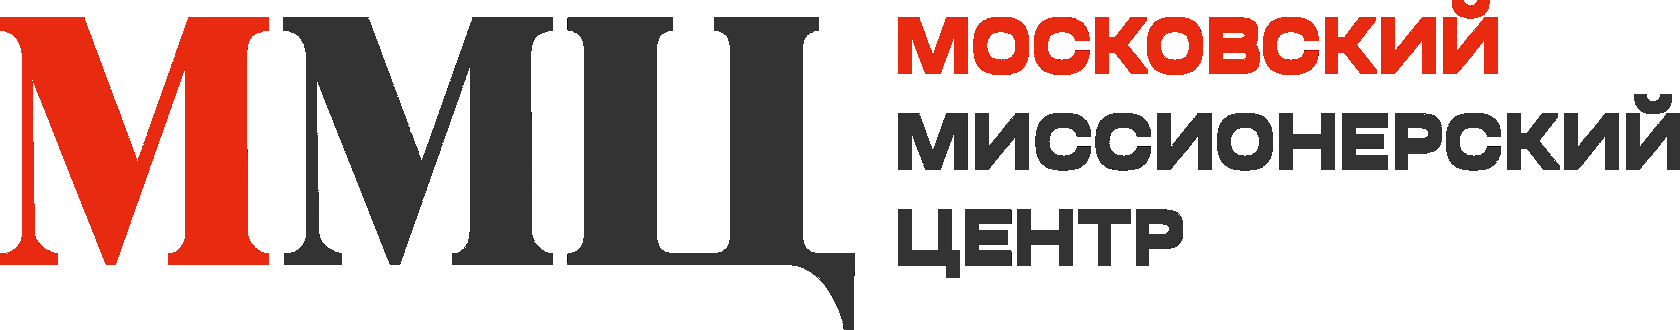 Московский миссионерский центр